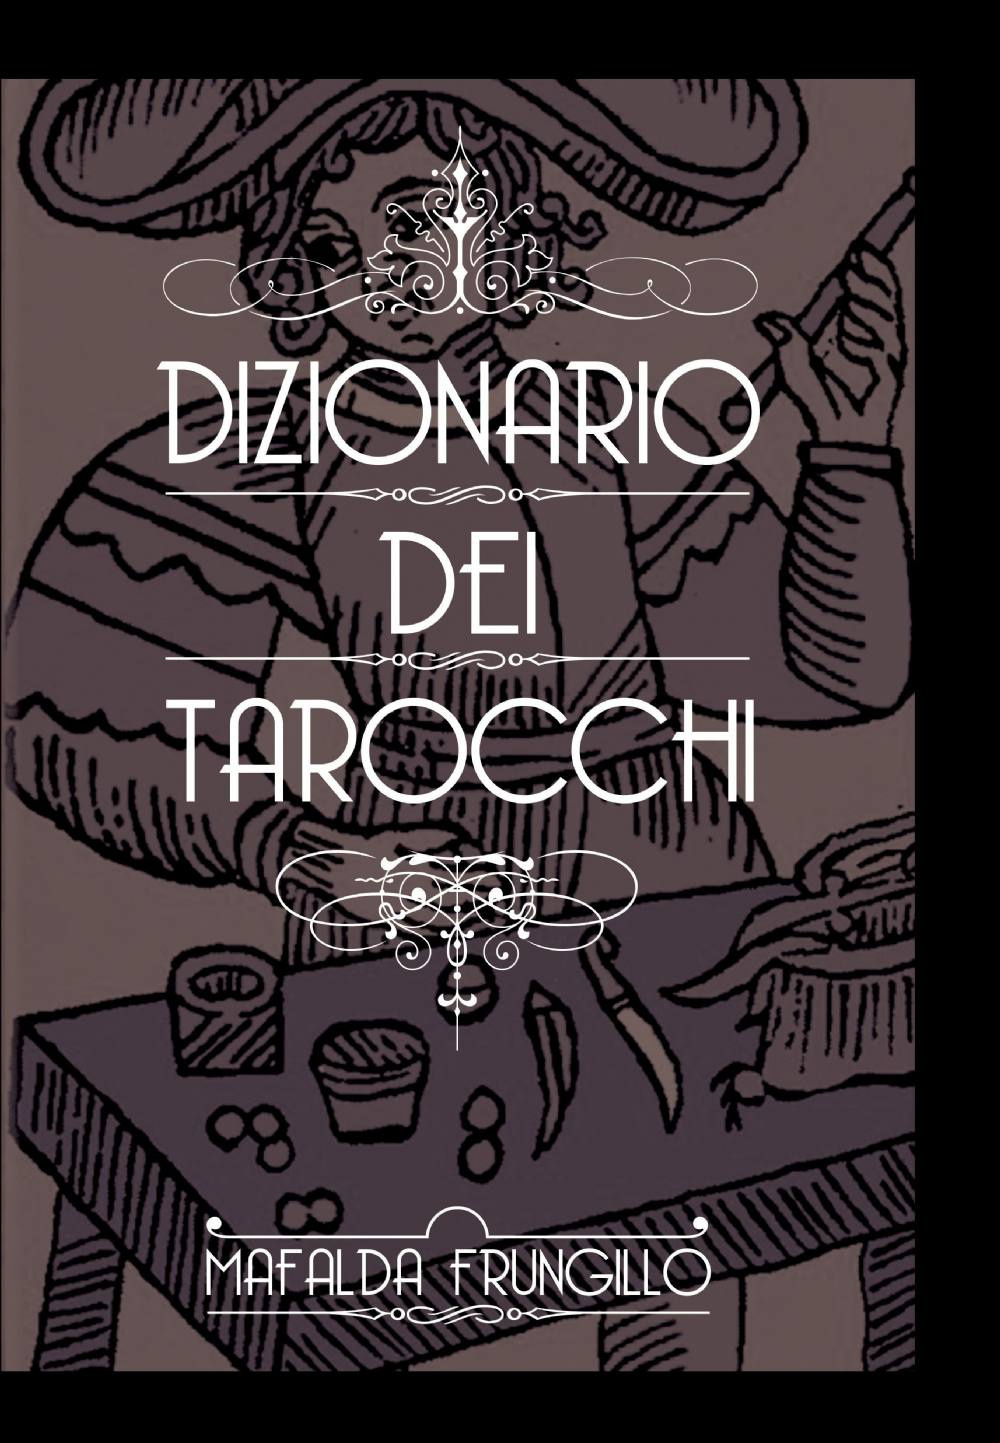 Image of Dizionario dei tarocchi